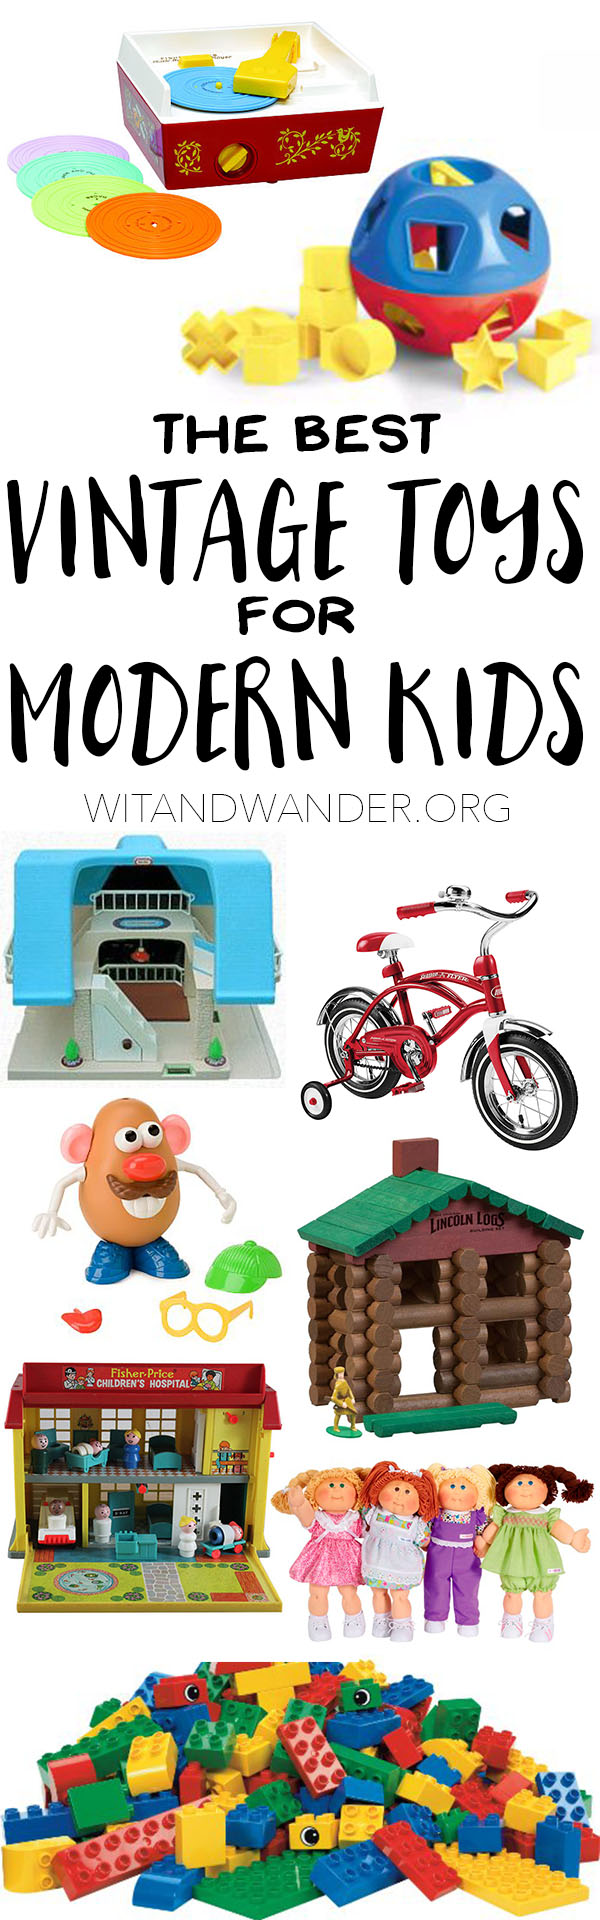 The Best Vintage Toys for Modern Kids - Wit & Wander